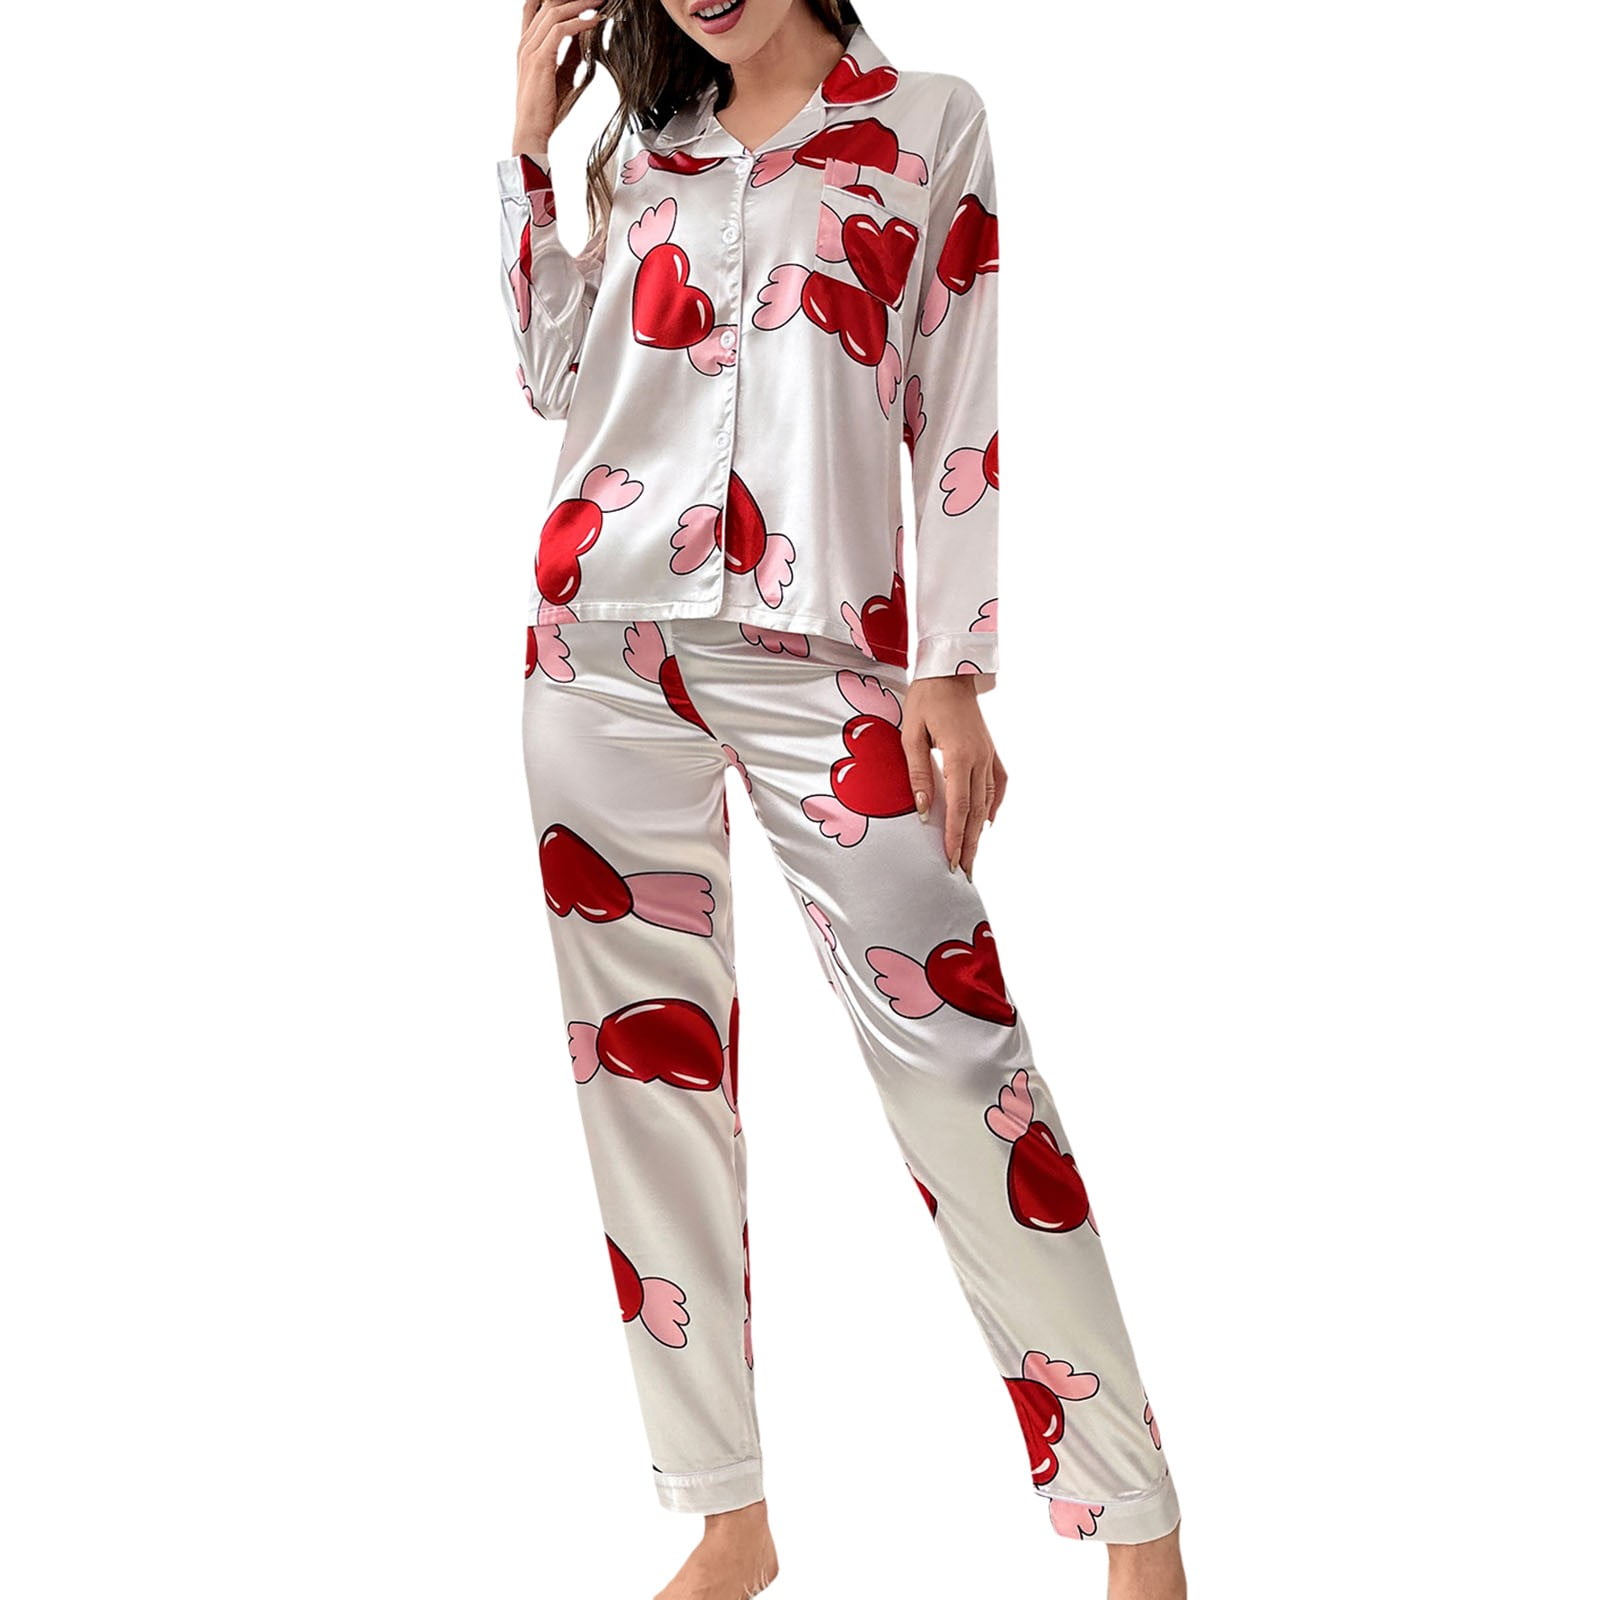 New Homewear Long Sleeve Pajamas Set Cute Leisure Women Sleepwear 2Pcs  Nightwear for Women Nightwear Long